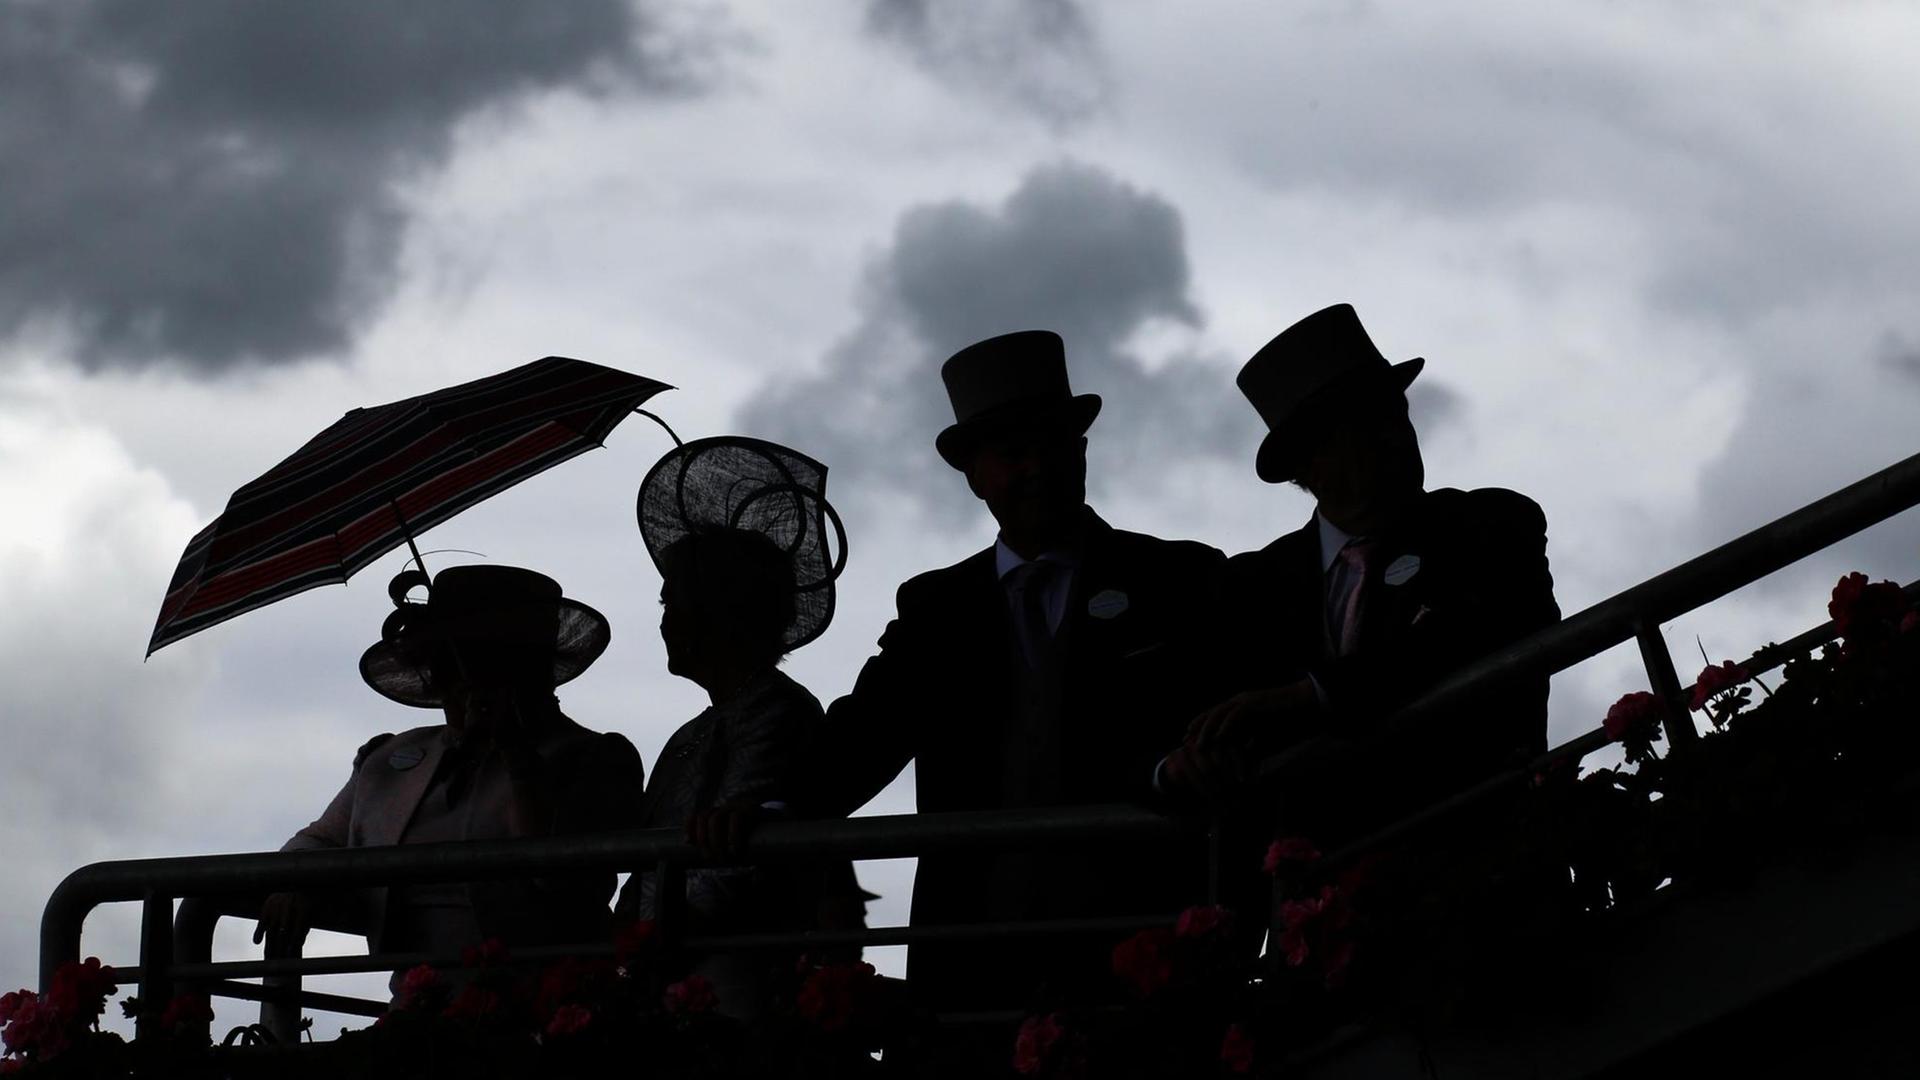 Silhouetten von zwei links stehenden, elegant gekleideten Frauen mit Hut und einem Regenschirm und zwei Männern mit Zylinder rechts daneben vor einem Himmel mit dunklen Wolken